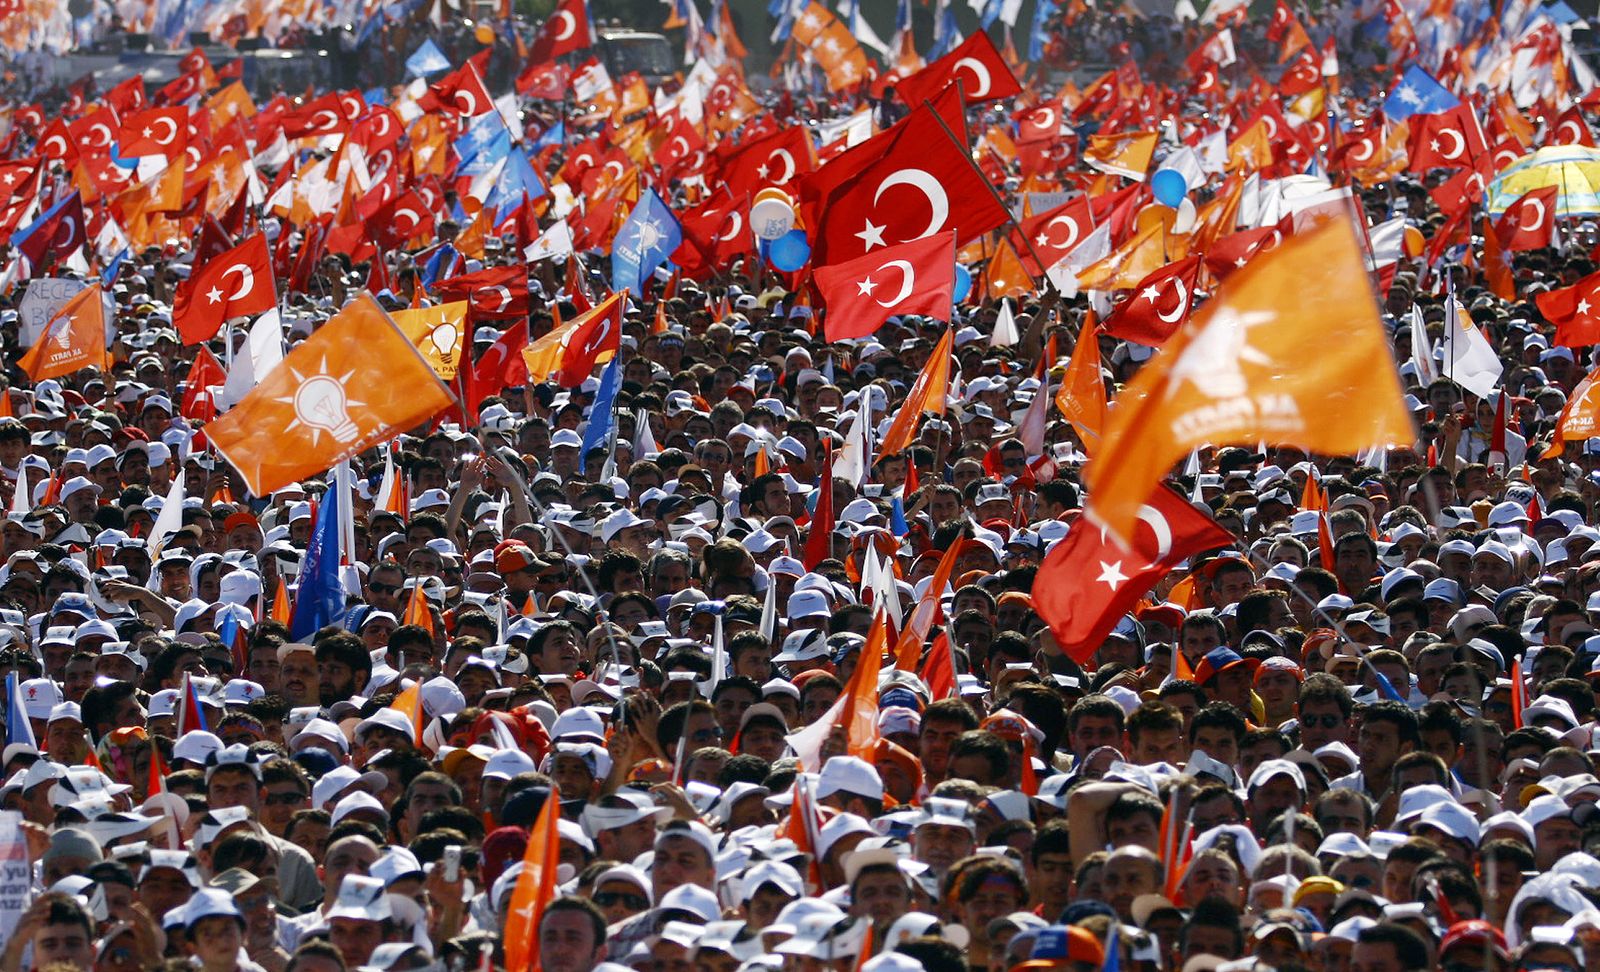 أنصار حزب العدالة والتنمية في تركيا يلوحون بعلمي تركيا والحزب خلال تجمع انتخابي في إسطنبول، 15 يوليو 2007 - AFP